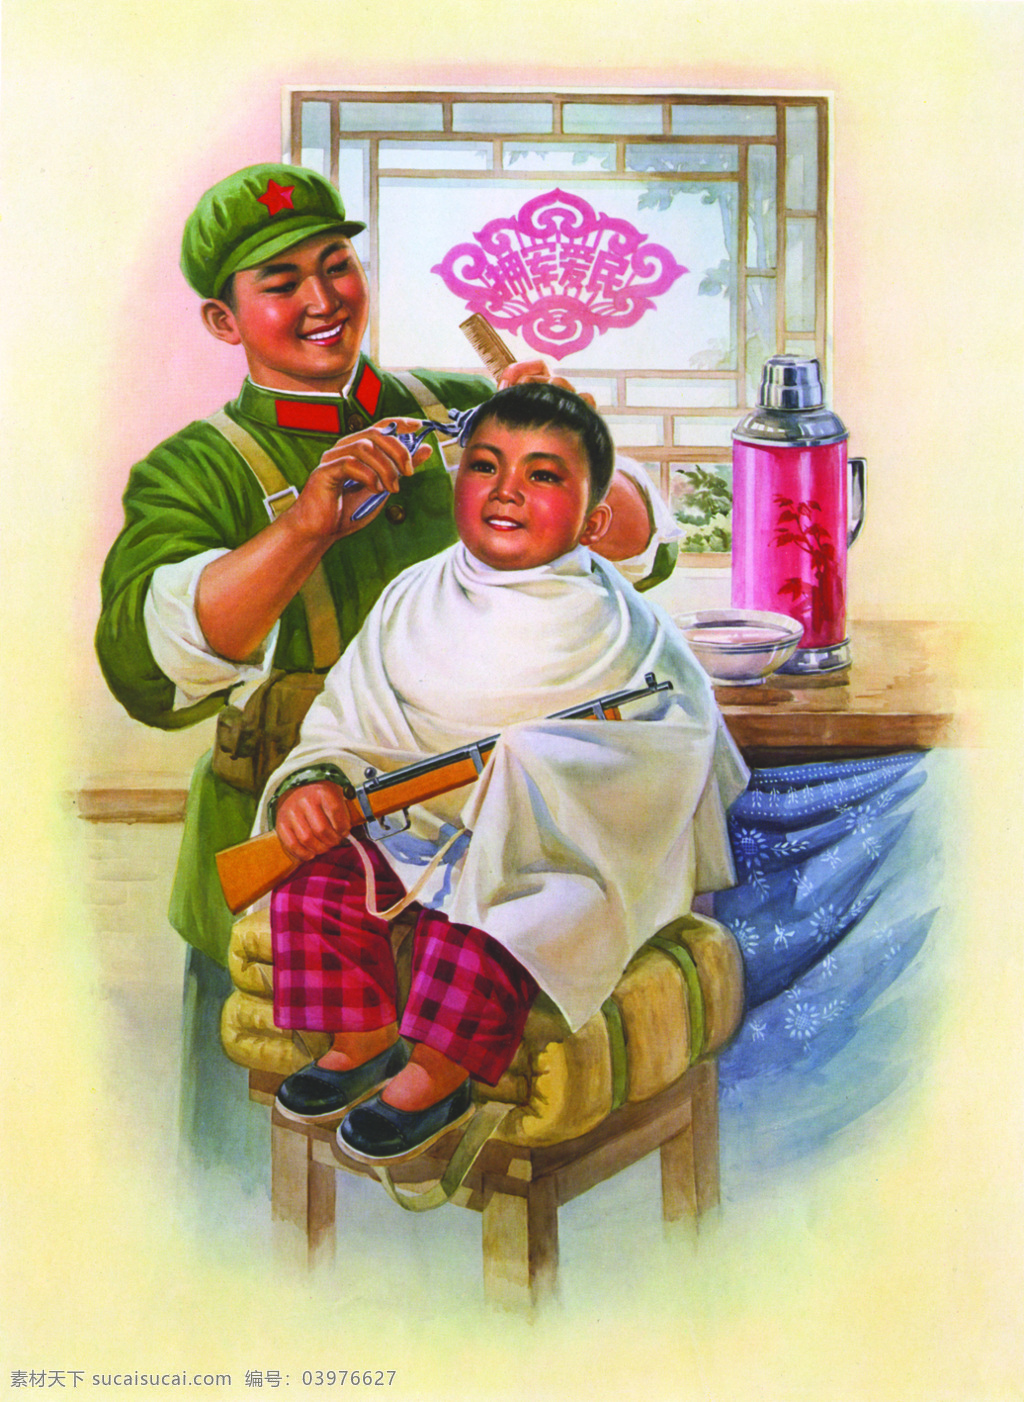 珍藏版 文革 时期 宣传画 儿童 理发 旧海报 拥军爱民 其他海报设计